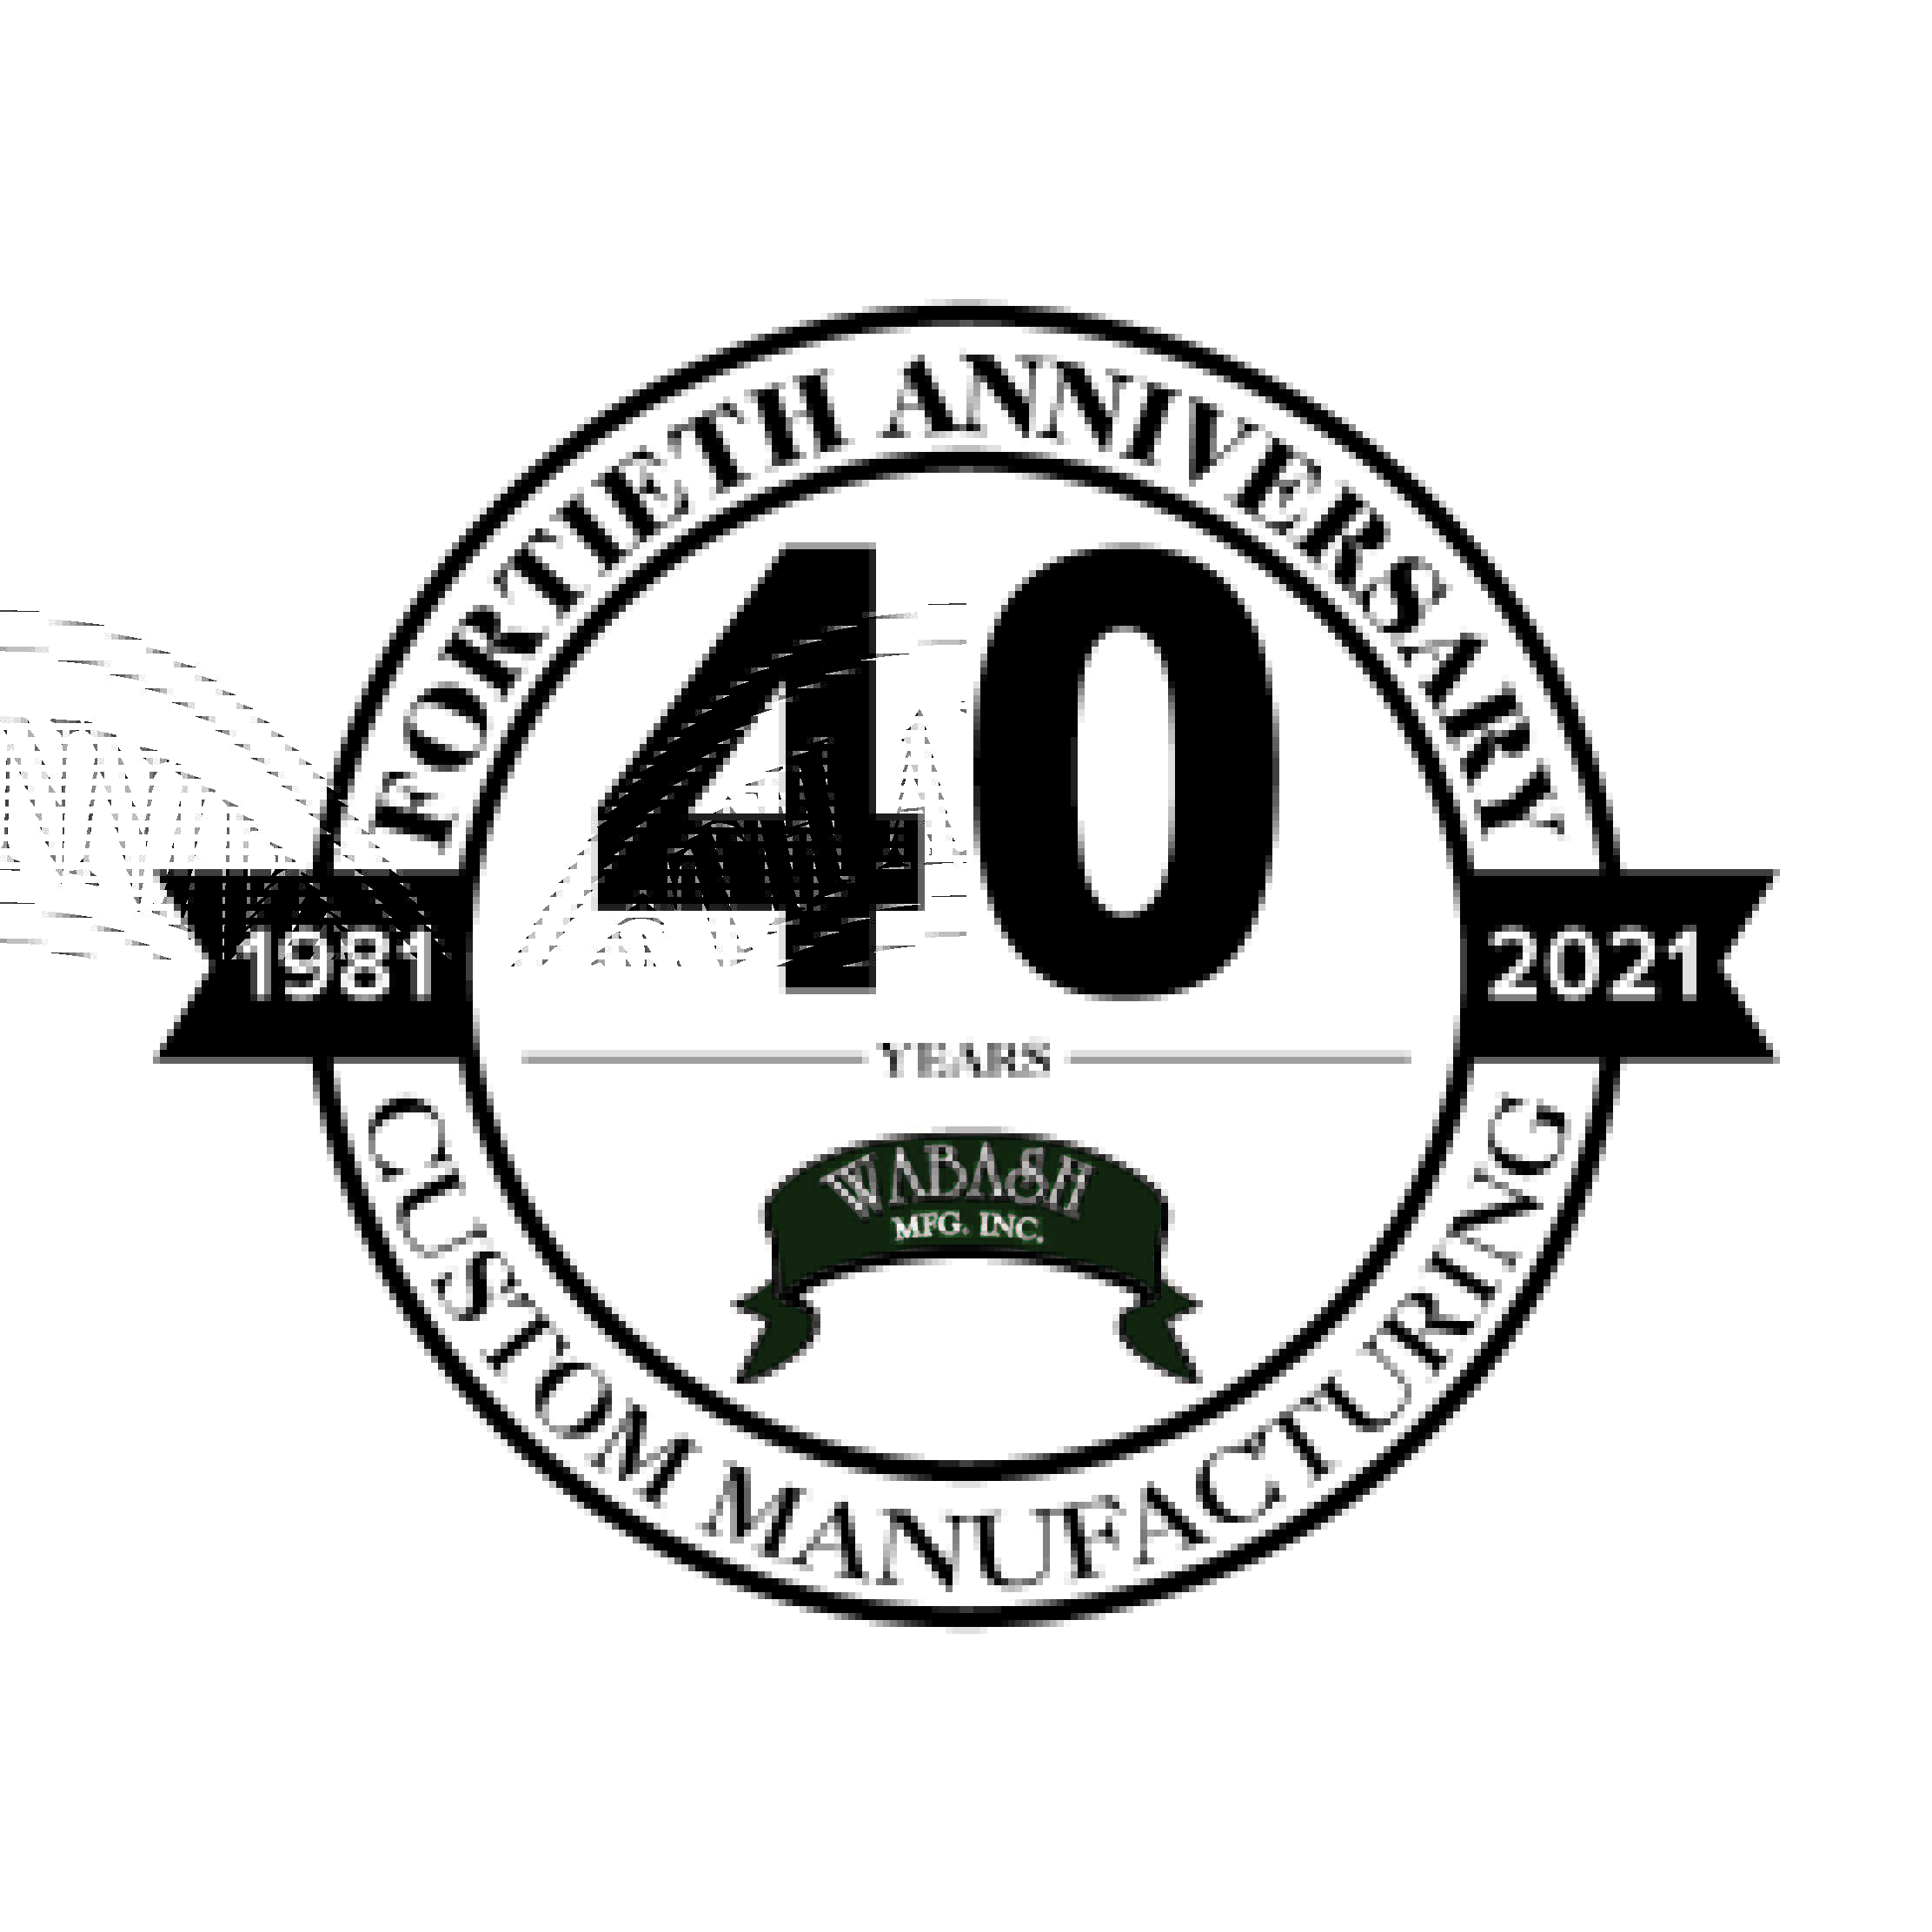 Celebrate 40 years of Wabash Mfg. Inc.